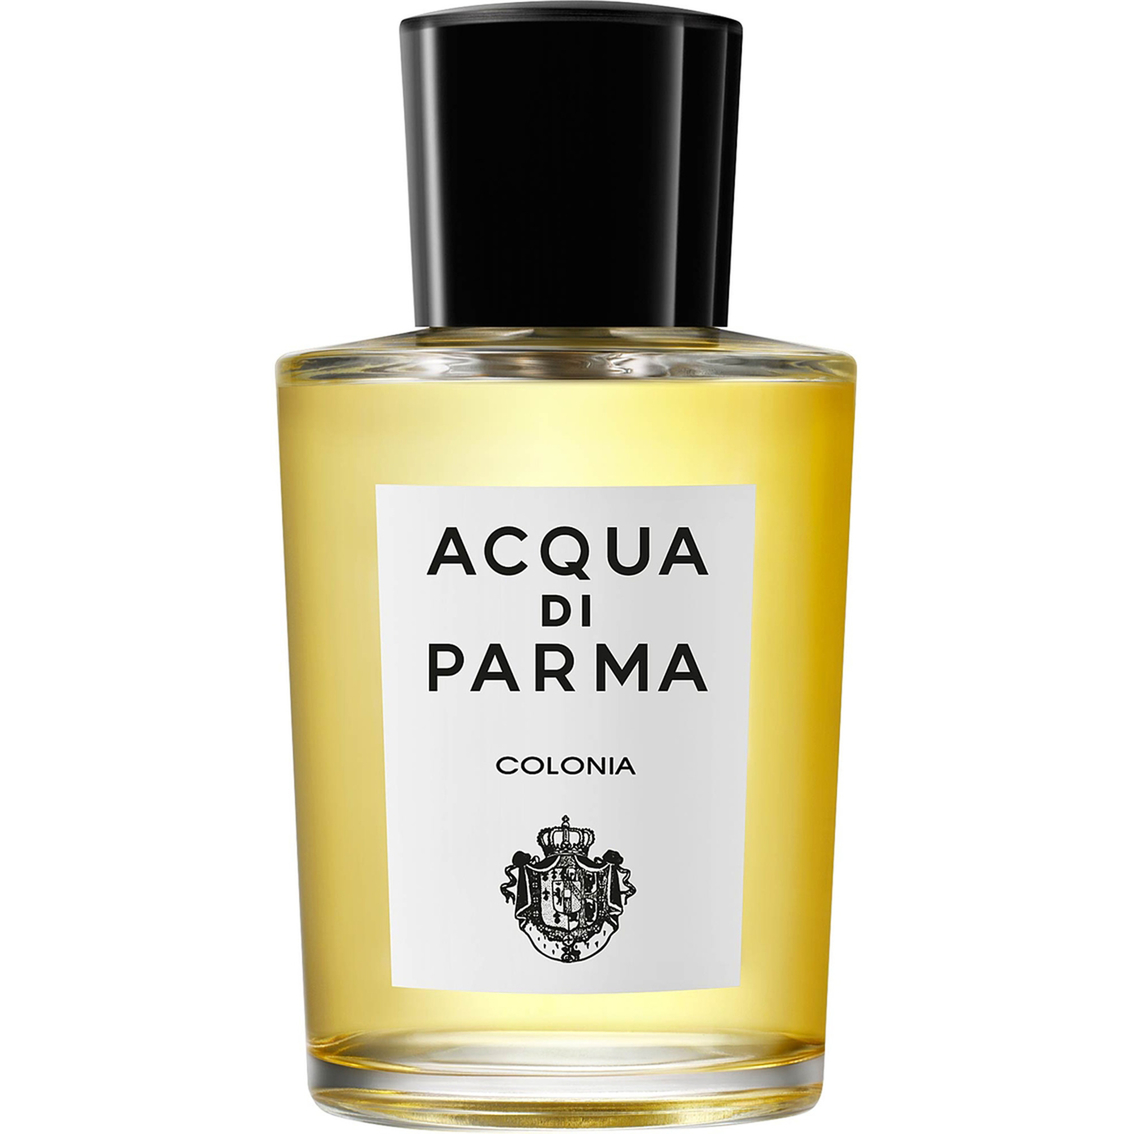 Acqua Di Parma Colonia Eau De Cologne Natural Spray Men S Fragrances Beauty Health Shop The Exchange